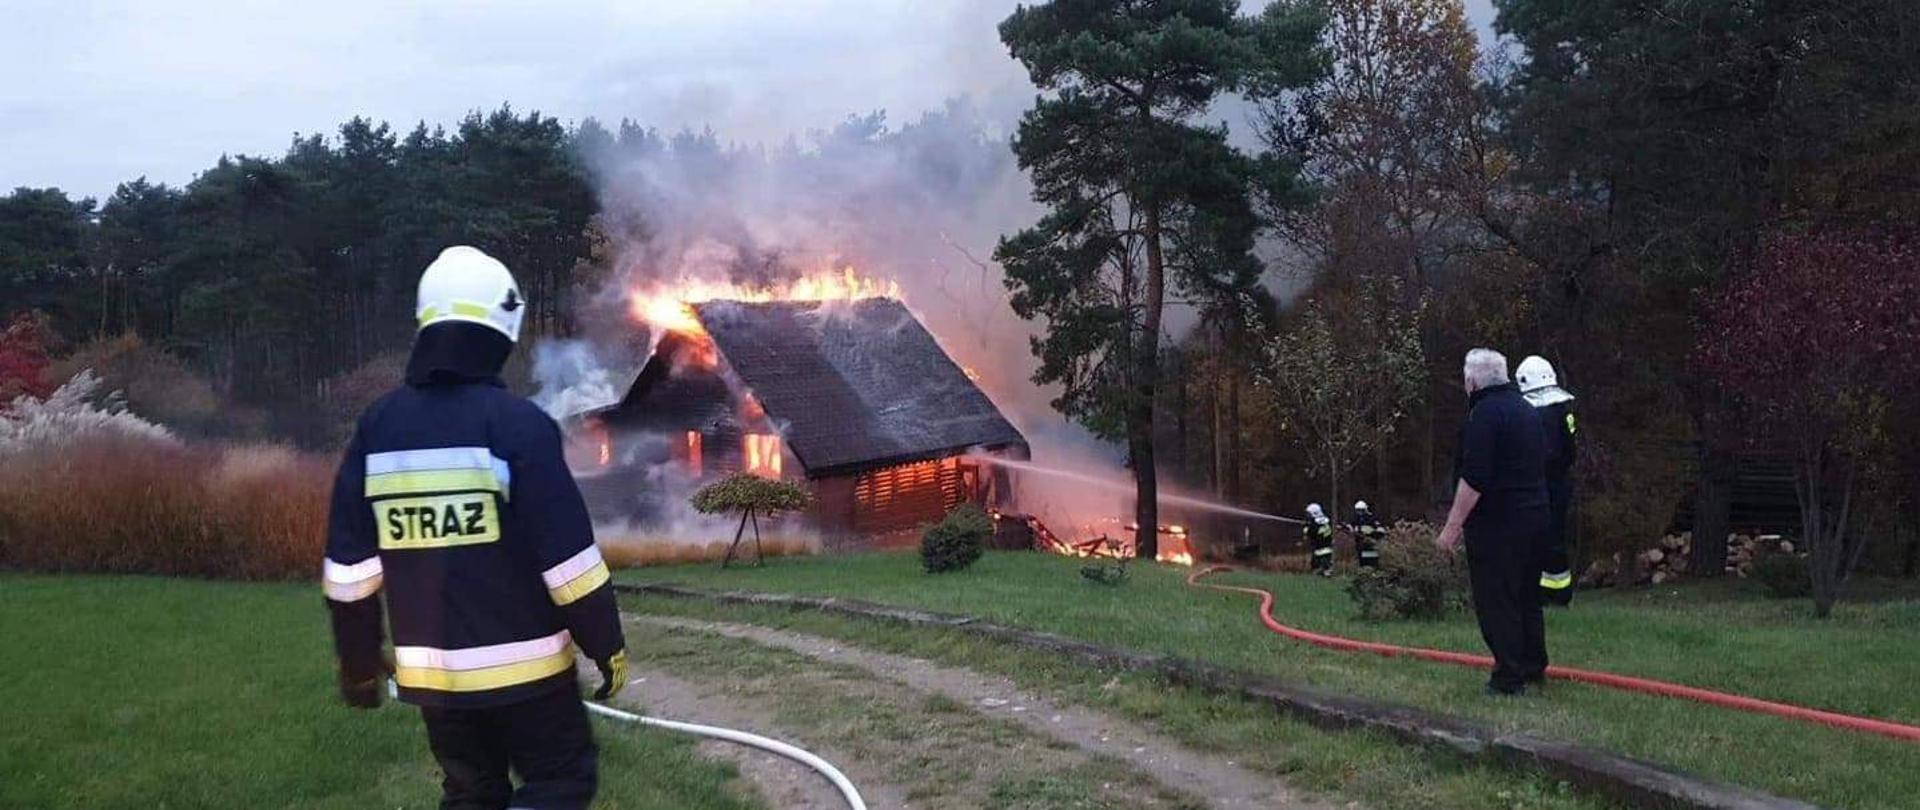 Na zdjęciu widzimy palący się dom oraz strażaków walczących z pożarem 